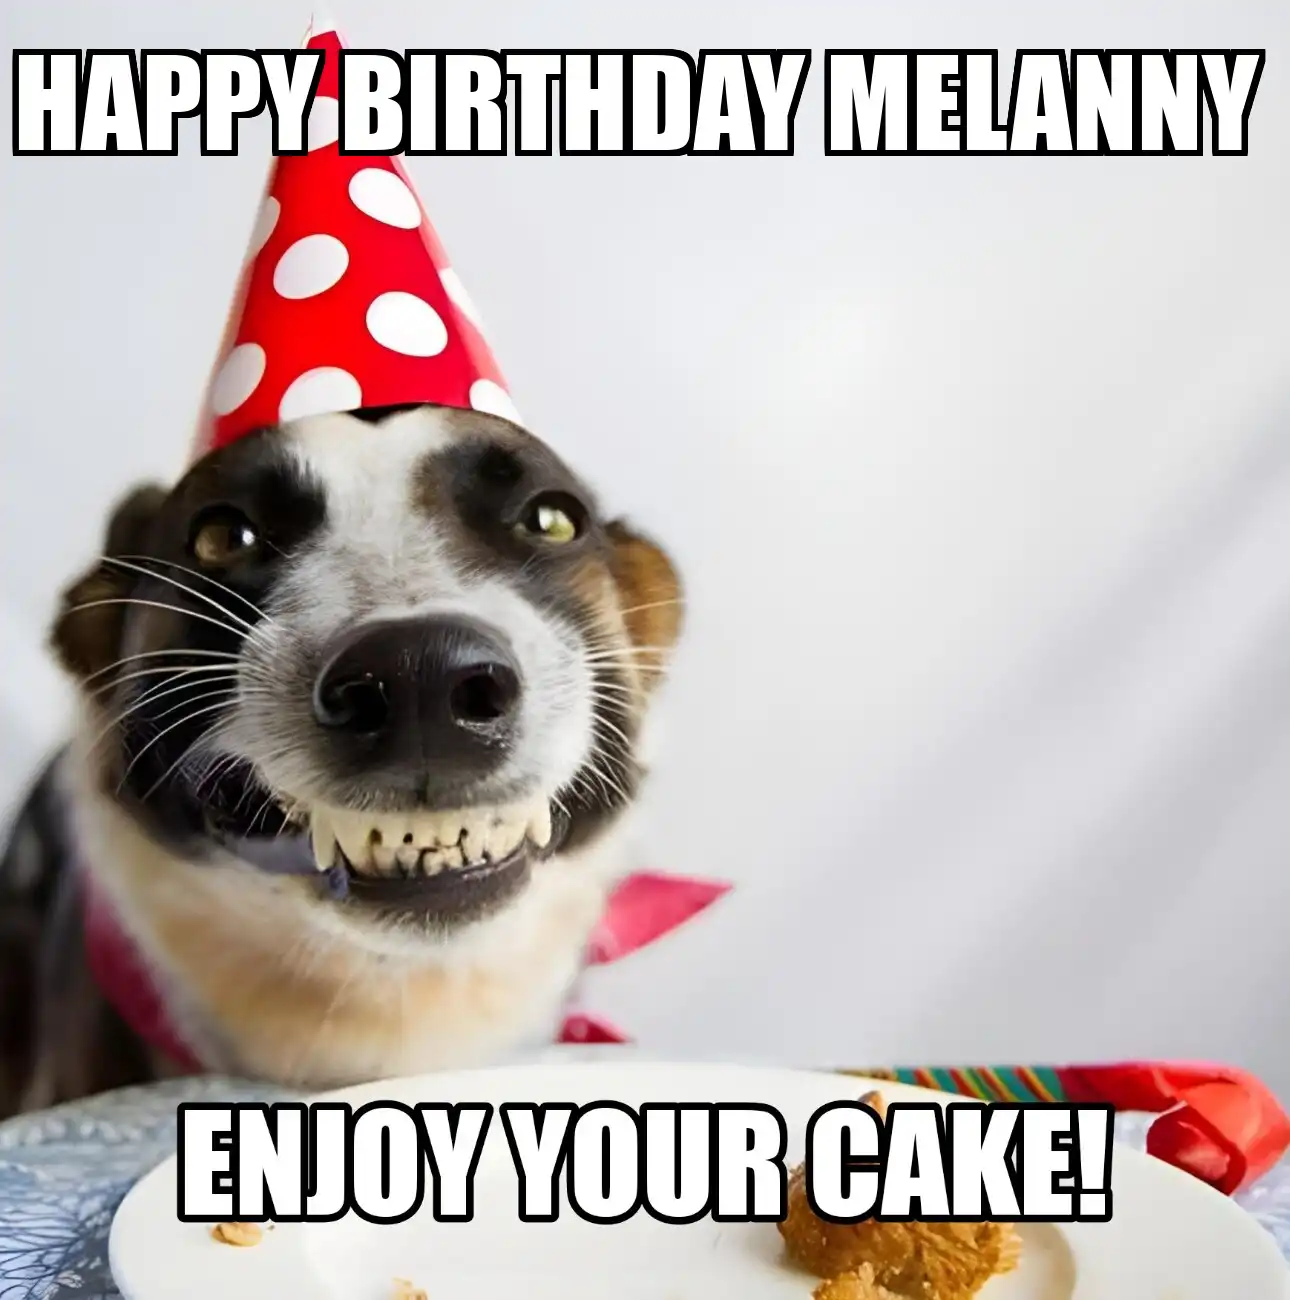 Happy Birthday Melanny Enjoy Your Cake Dog Meme